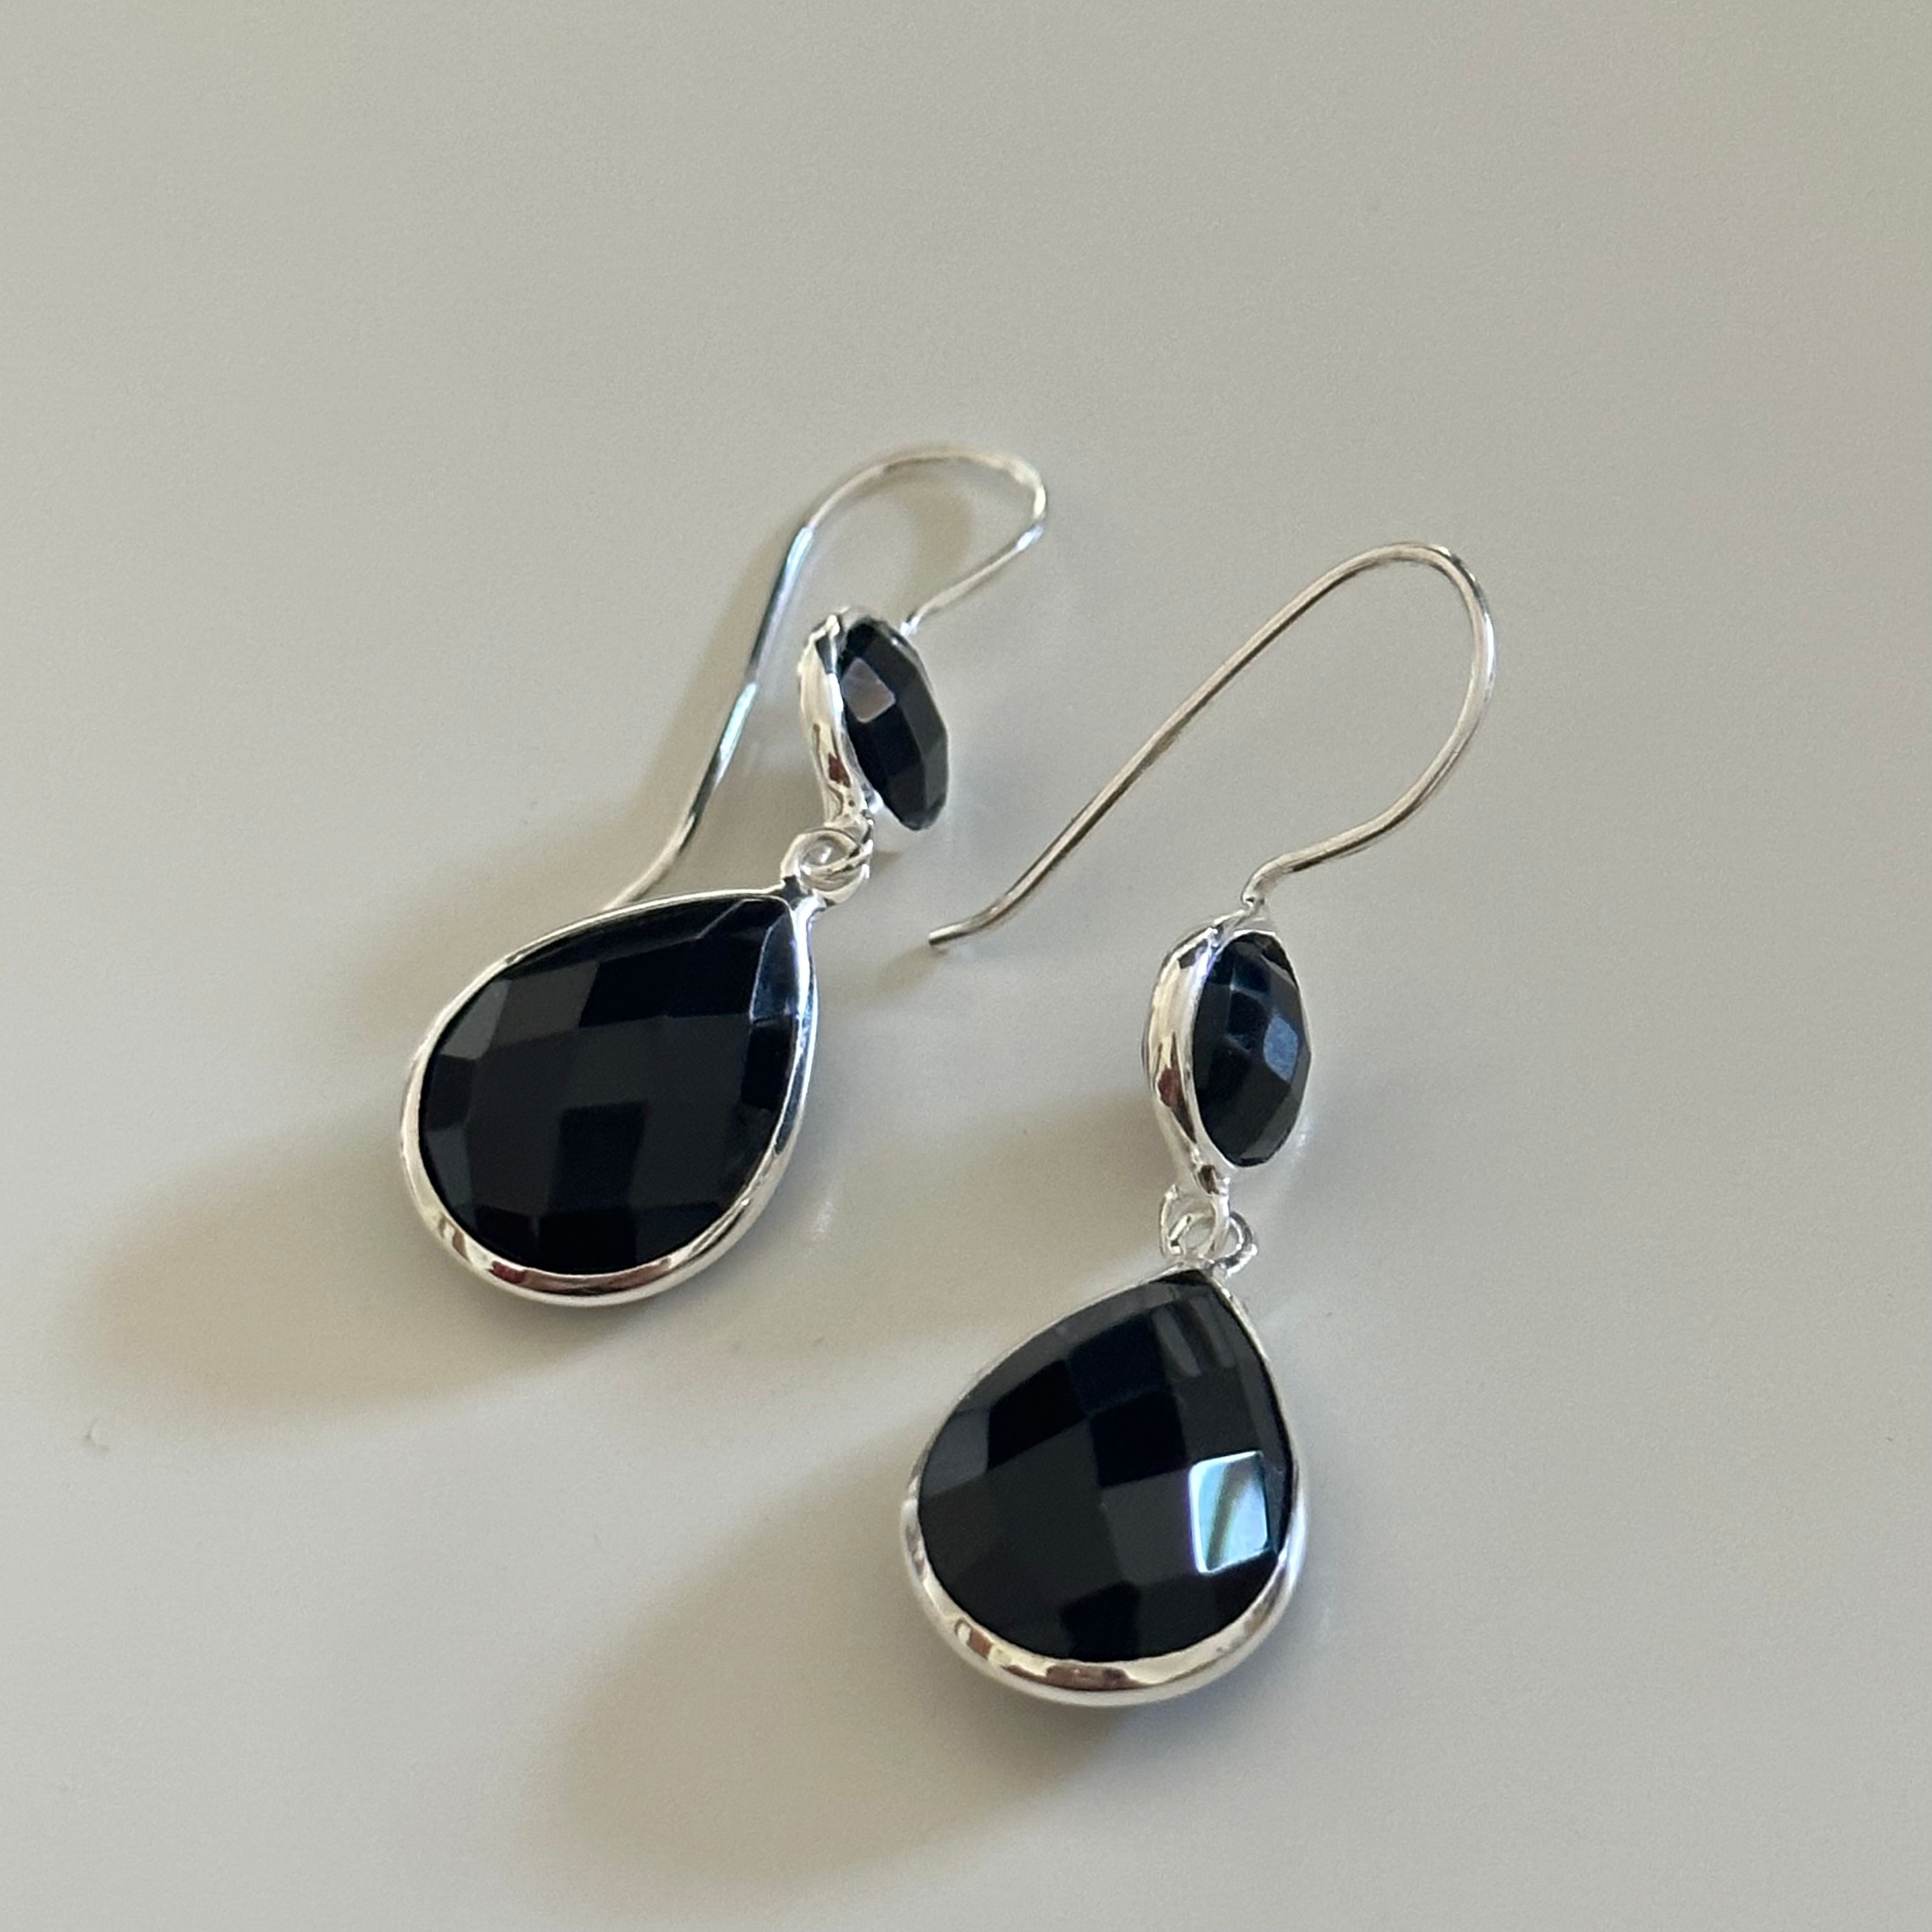 Black Onyx Gemstone Two Stone Earrings in Sterling Silver - Teardrop